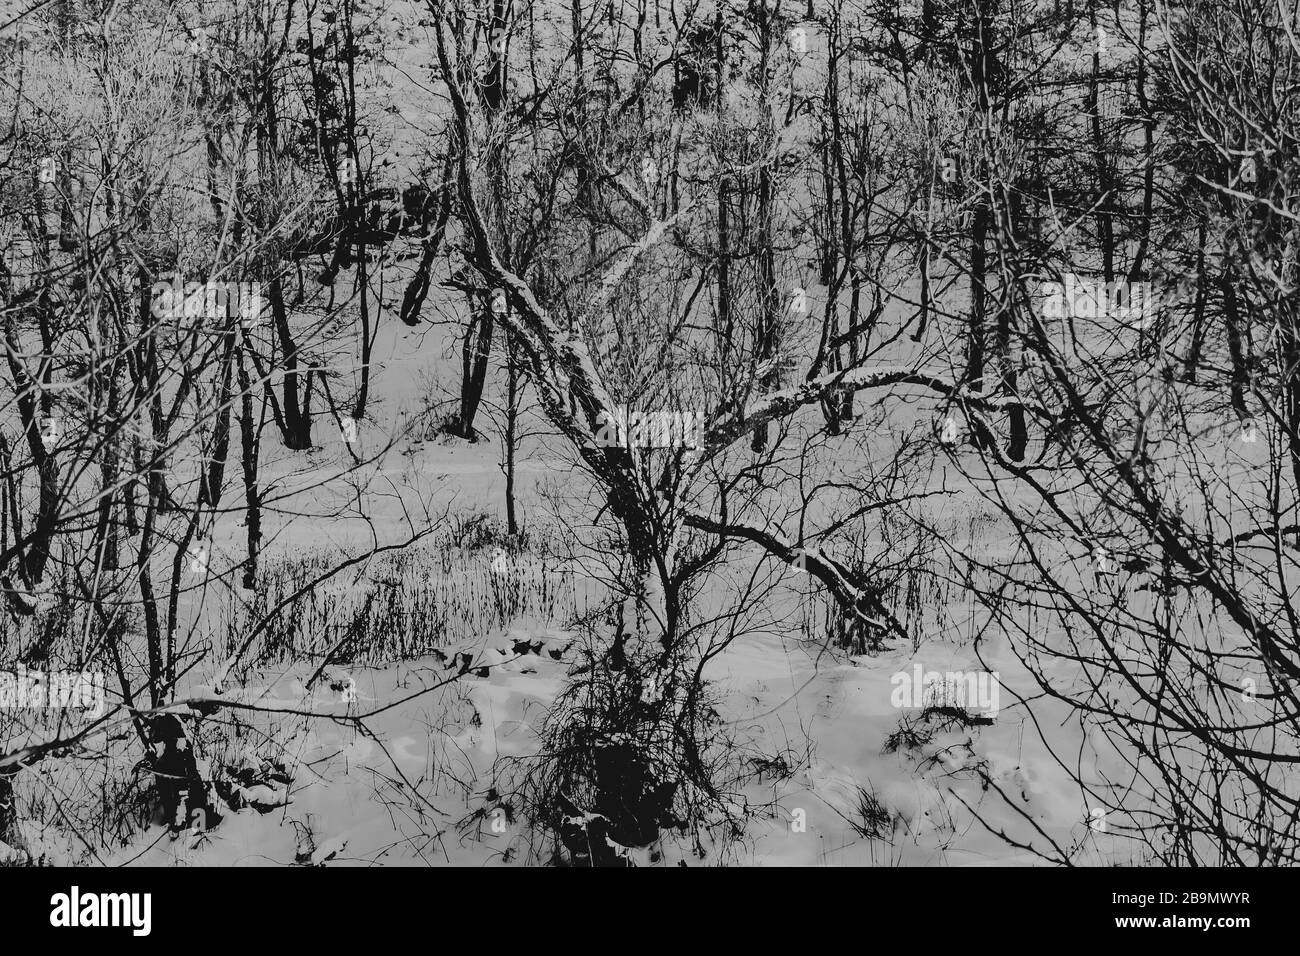 Alter Baum mit verdrehten Zweigen in Schwarz-Weiß Stockfoto